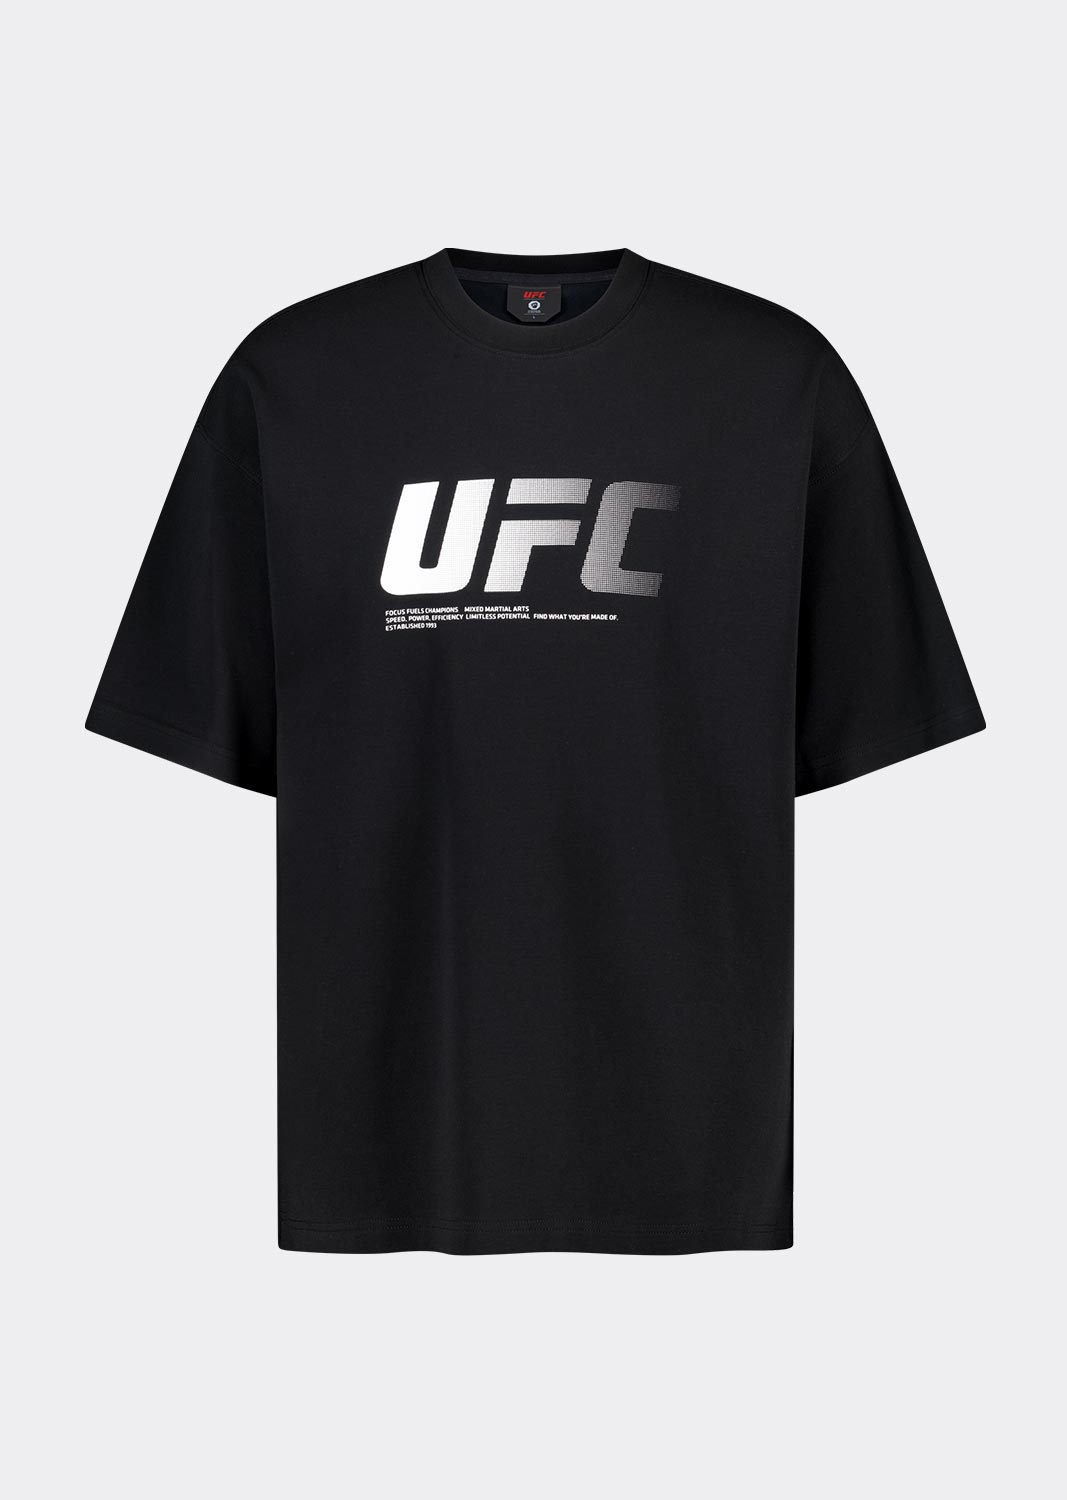 UFC 제로 100 오버핏 반팔 티셔츠 블랙 U4SSV2312BK